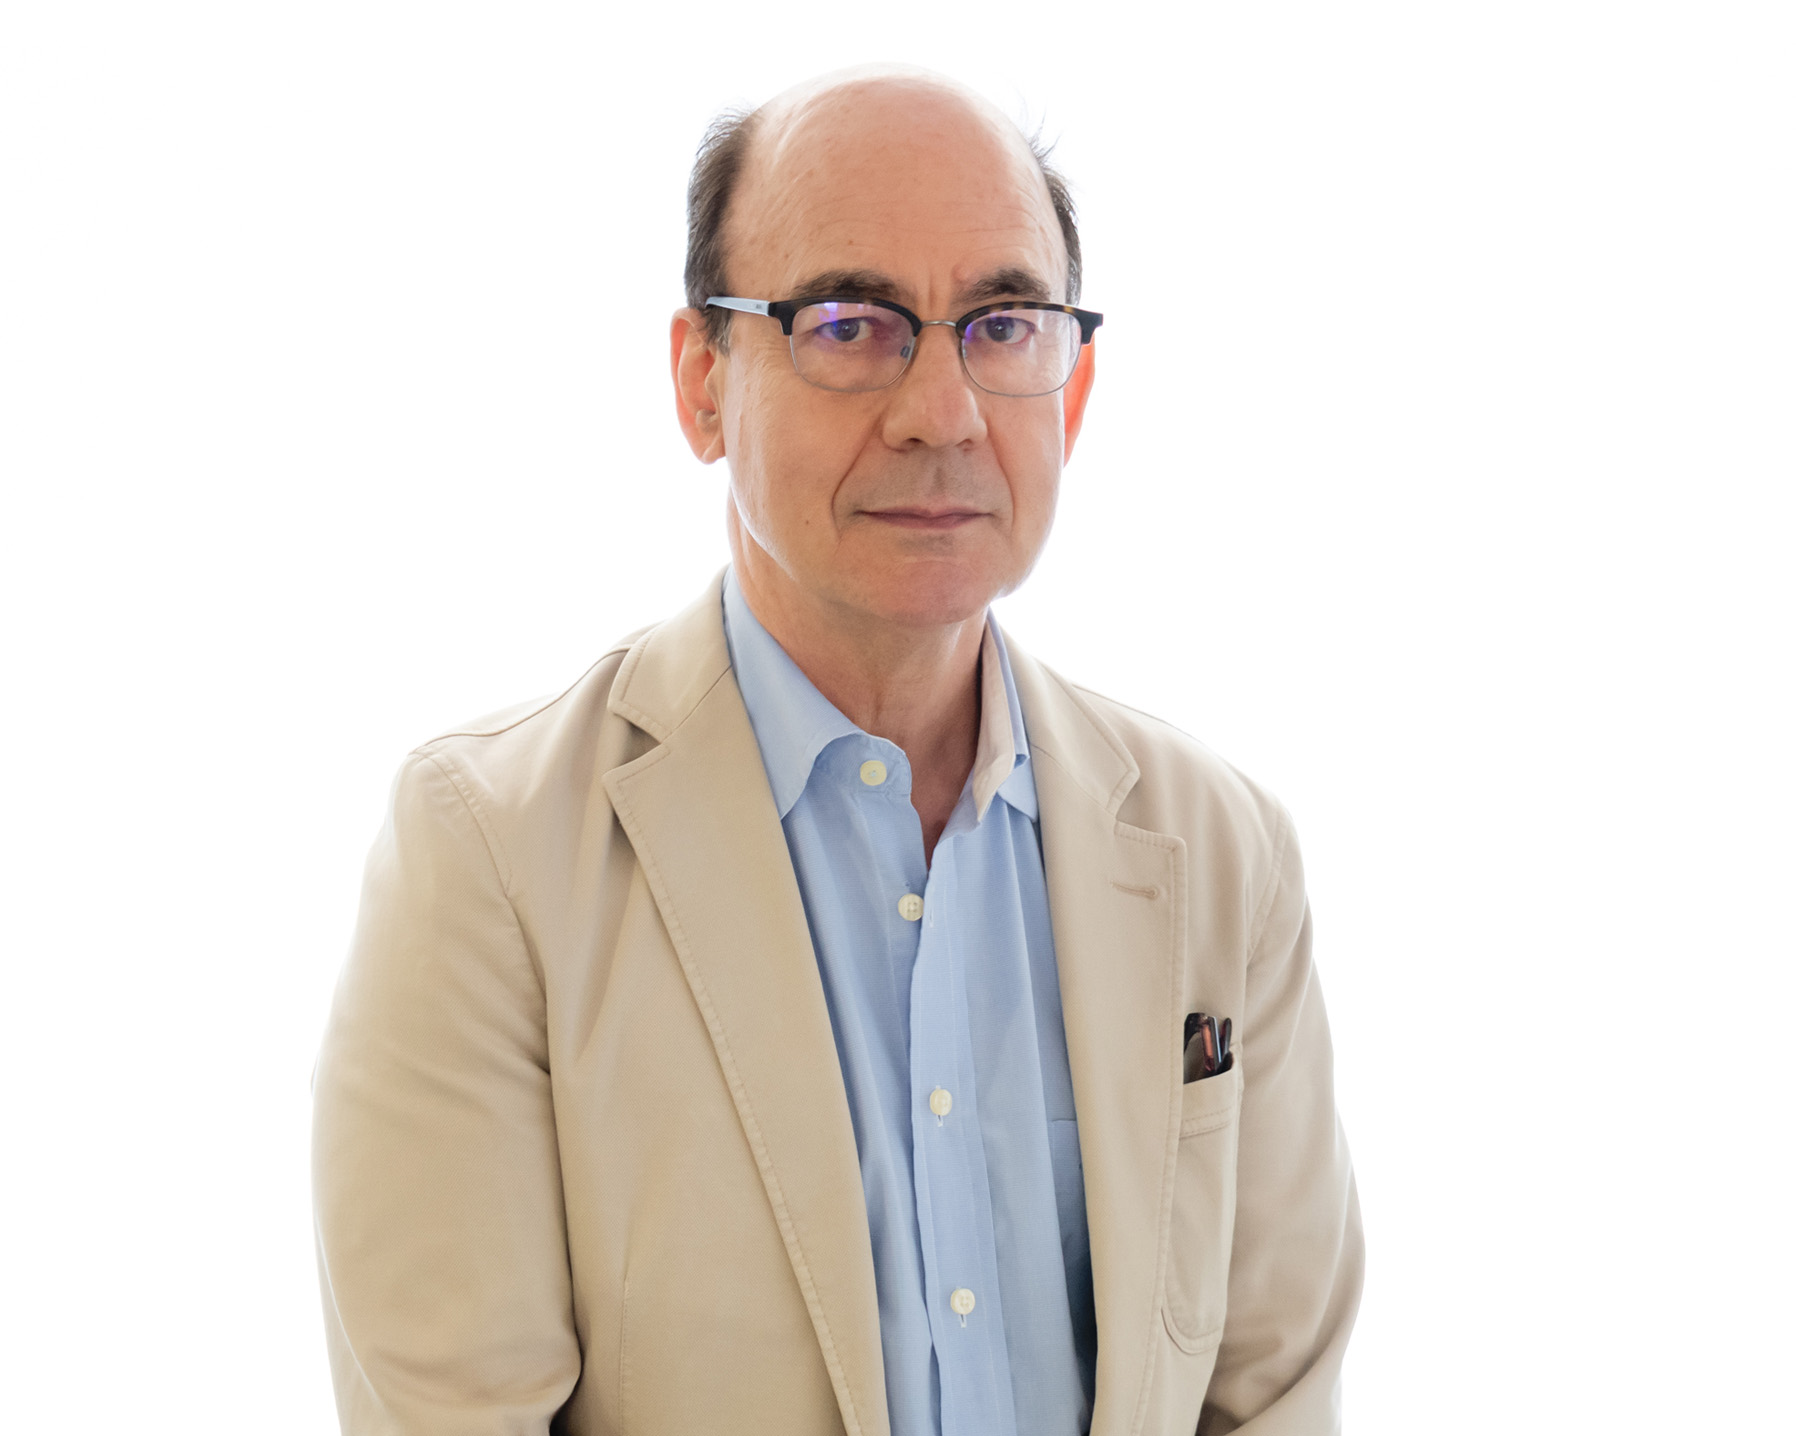 Albert Balaguer, MD, PhD